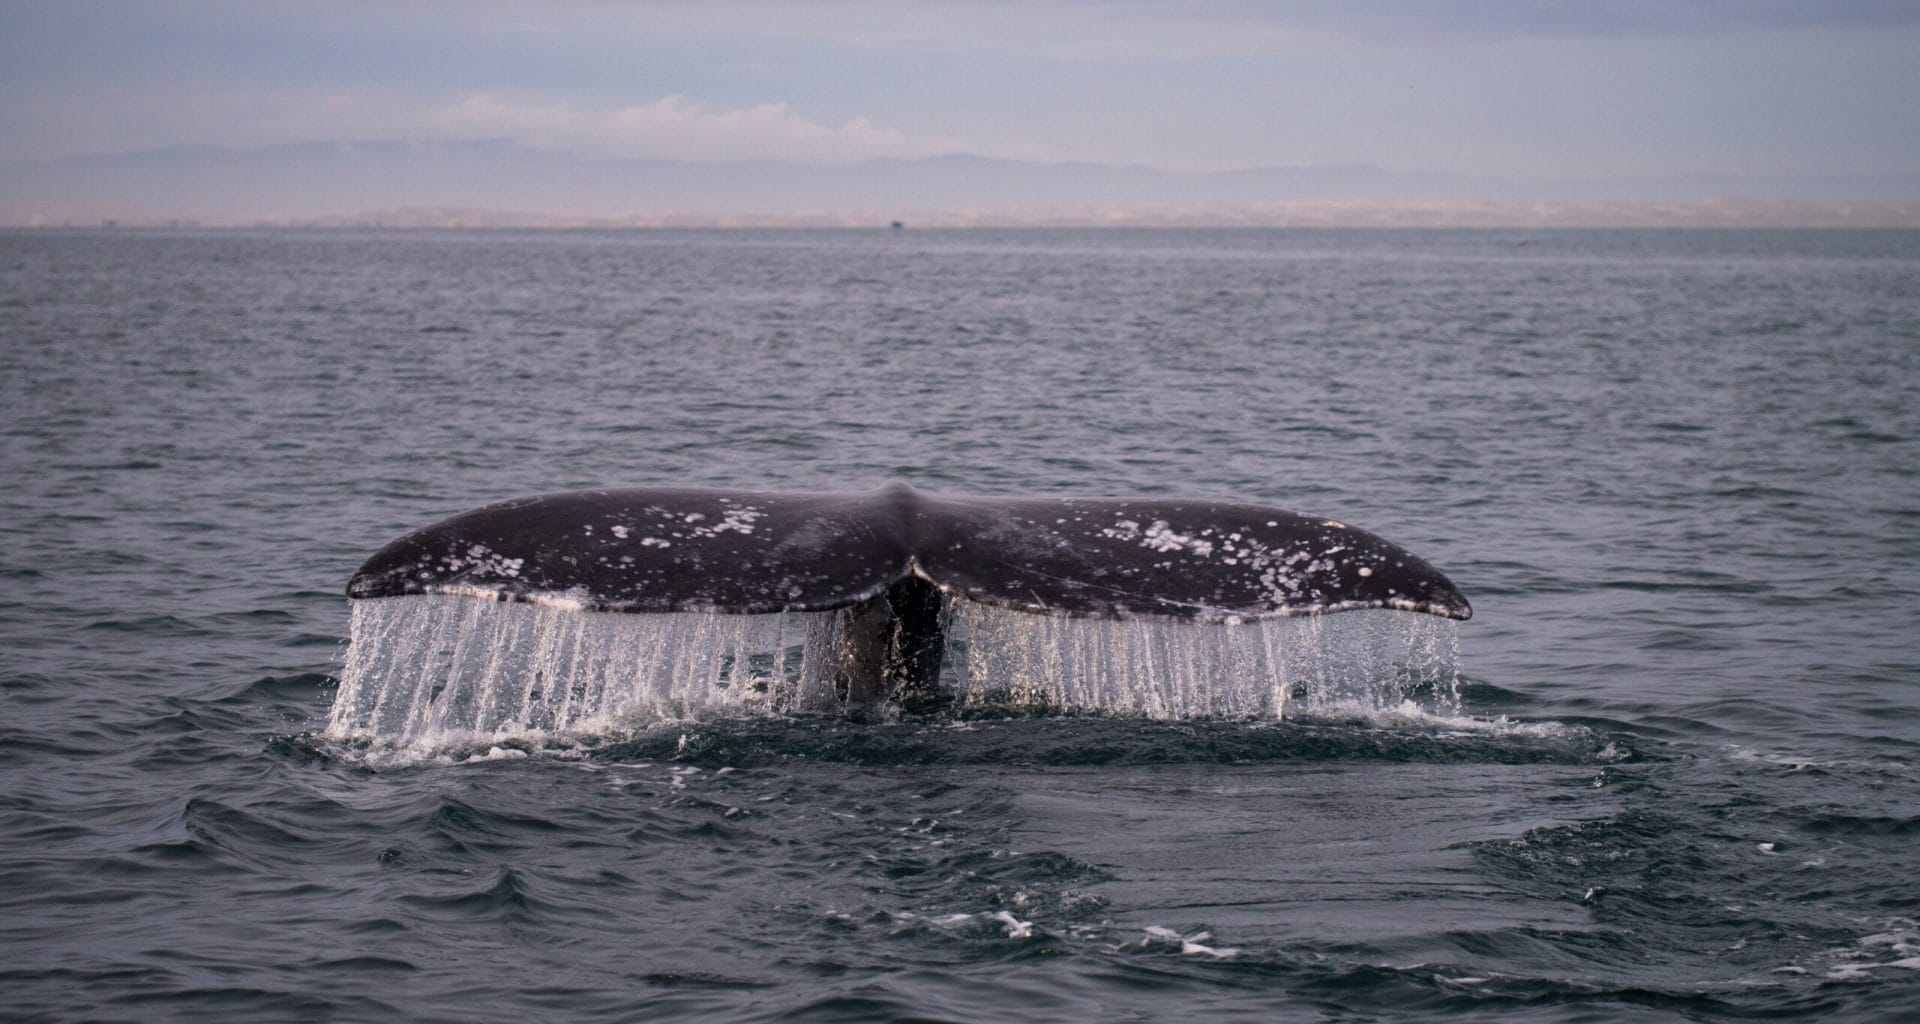 Cola de ballena color negro saliendo del mar.